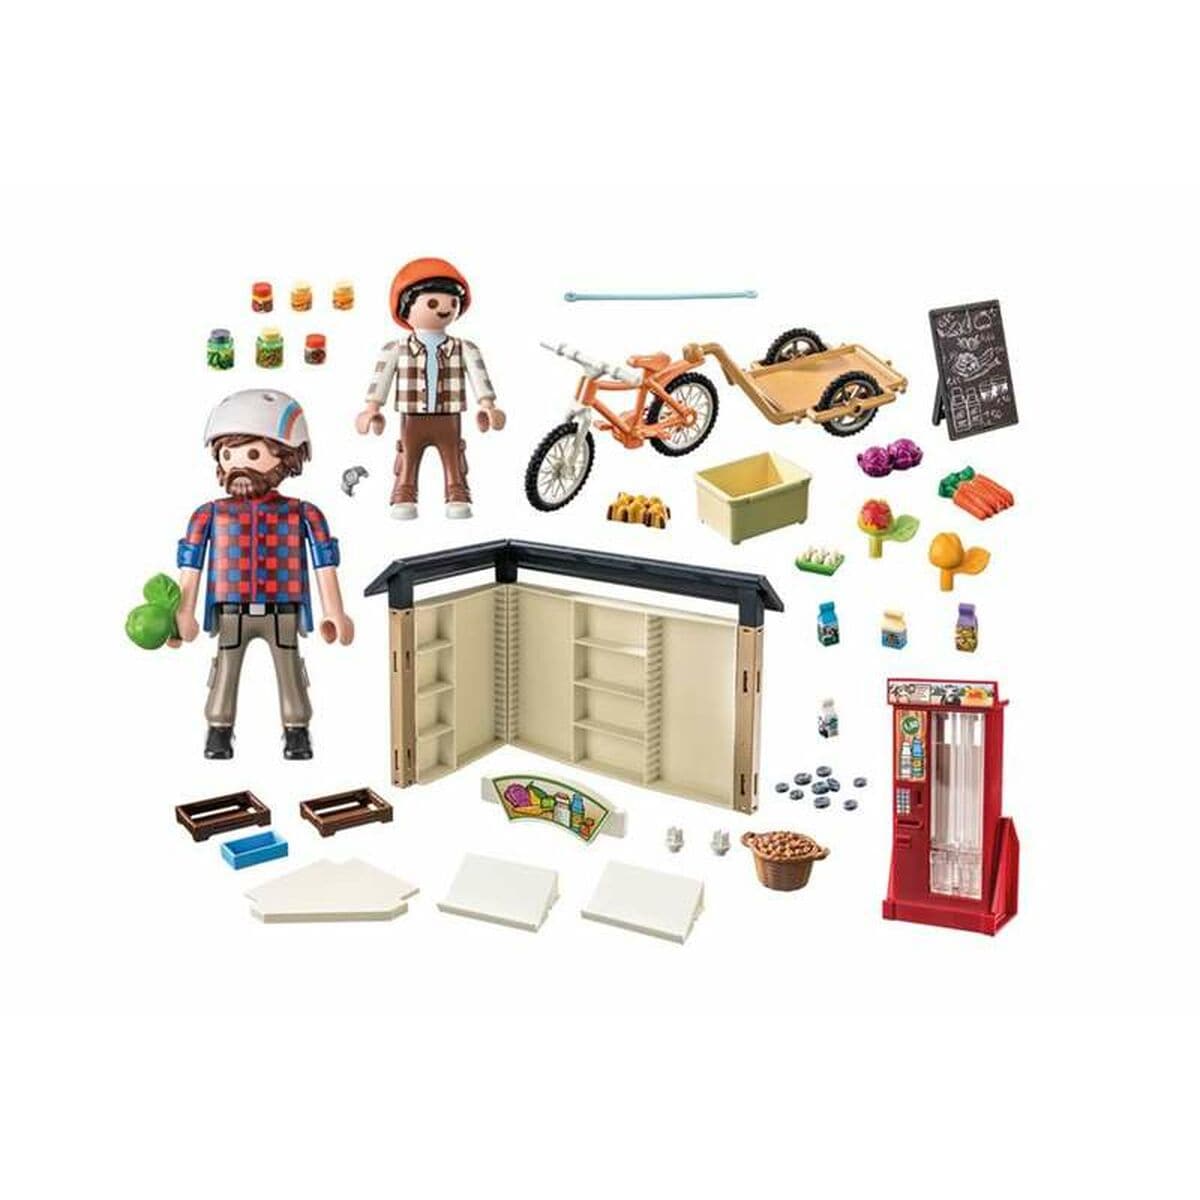 Playmobil Spielzeug | Kostüme > Spielzeug und Spiele > Weiteres spielzeug Playset Playmobil 71250 24-Hour Farm Store 83 Stücke